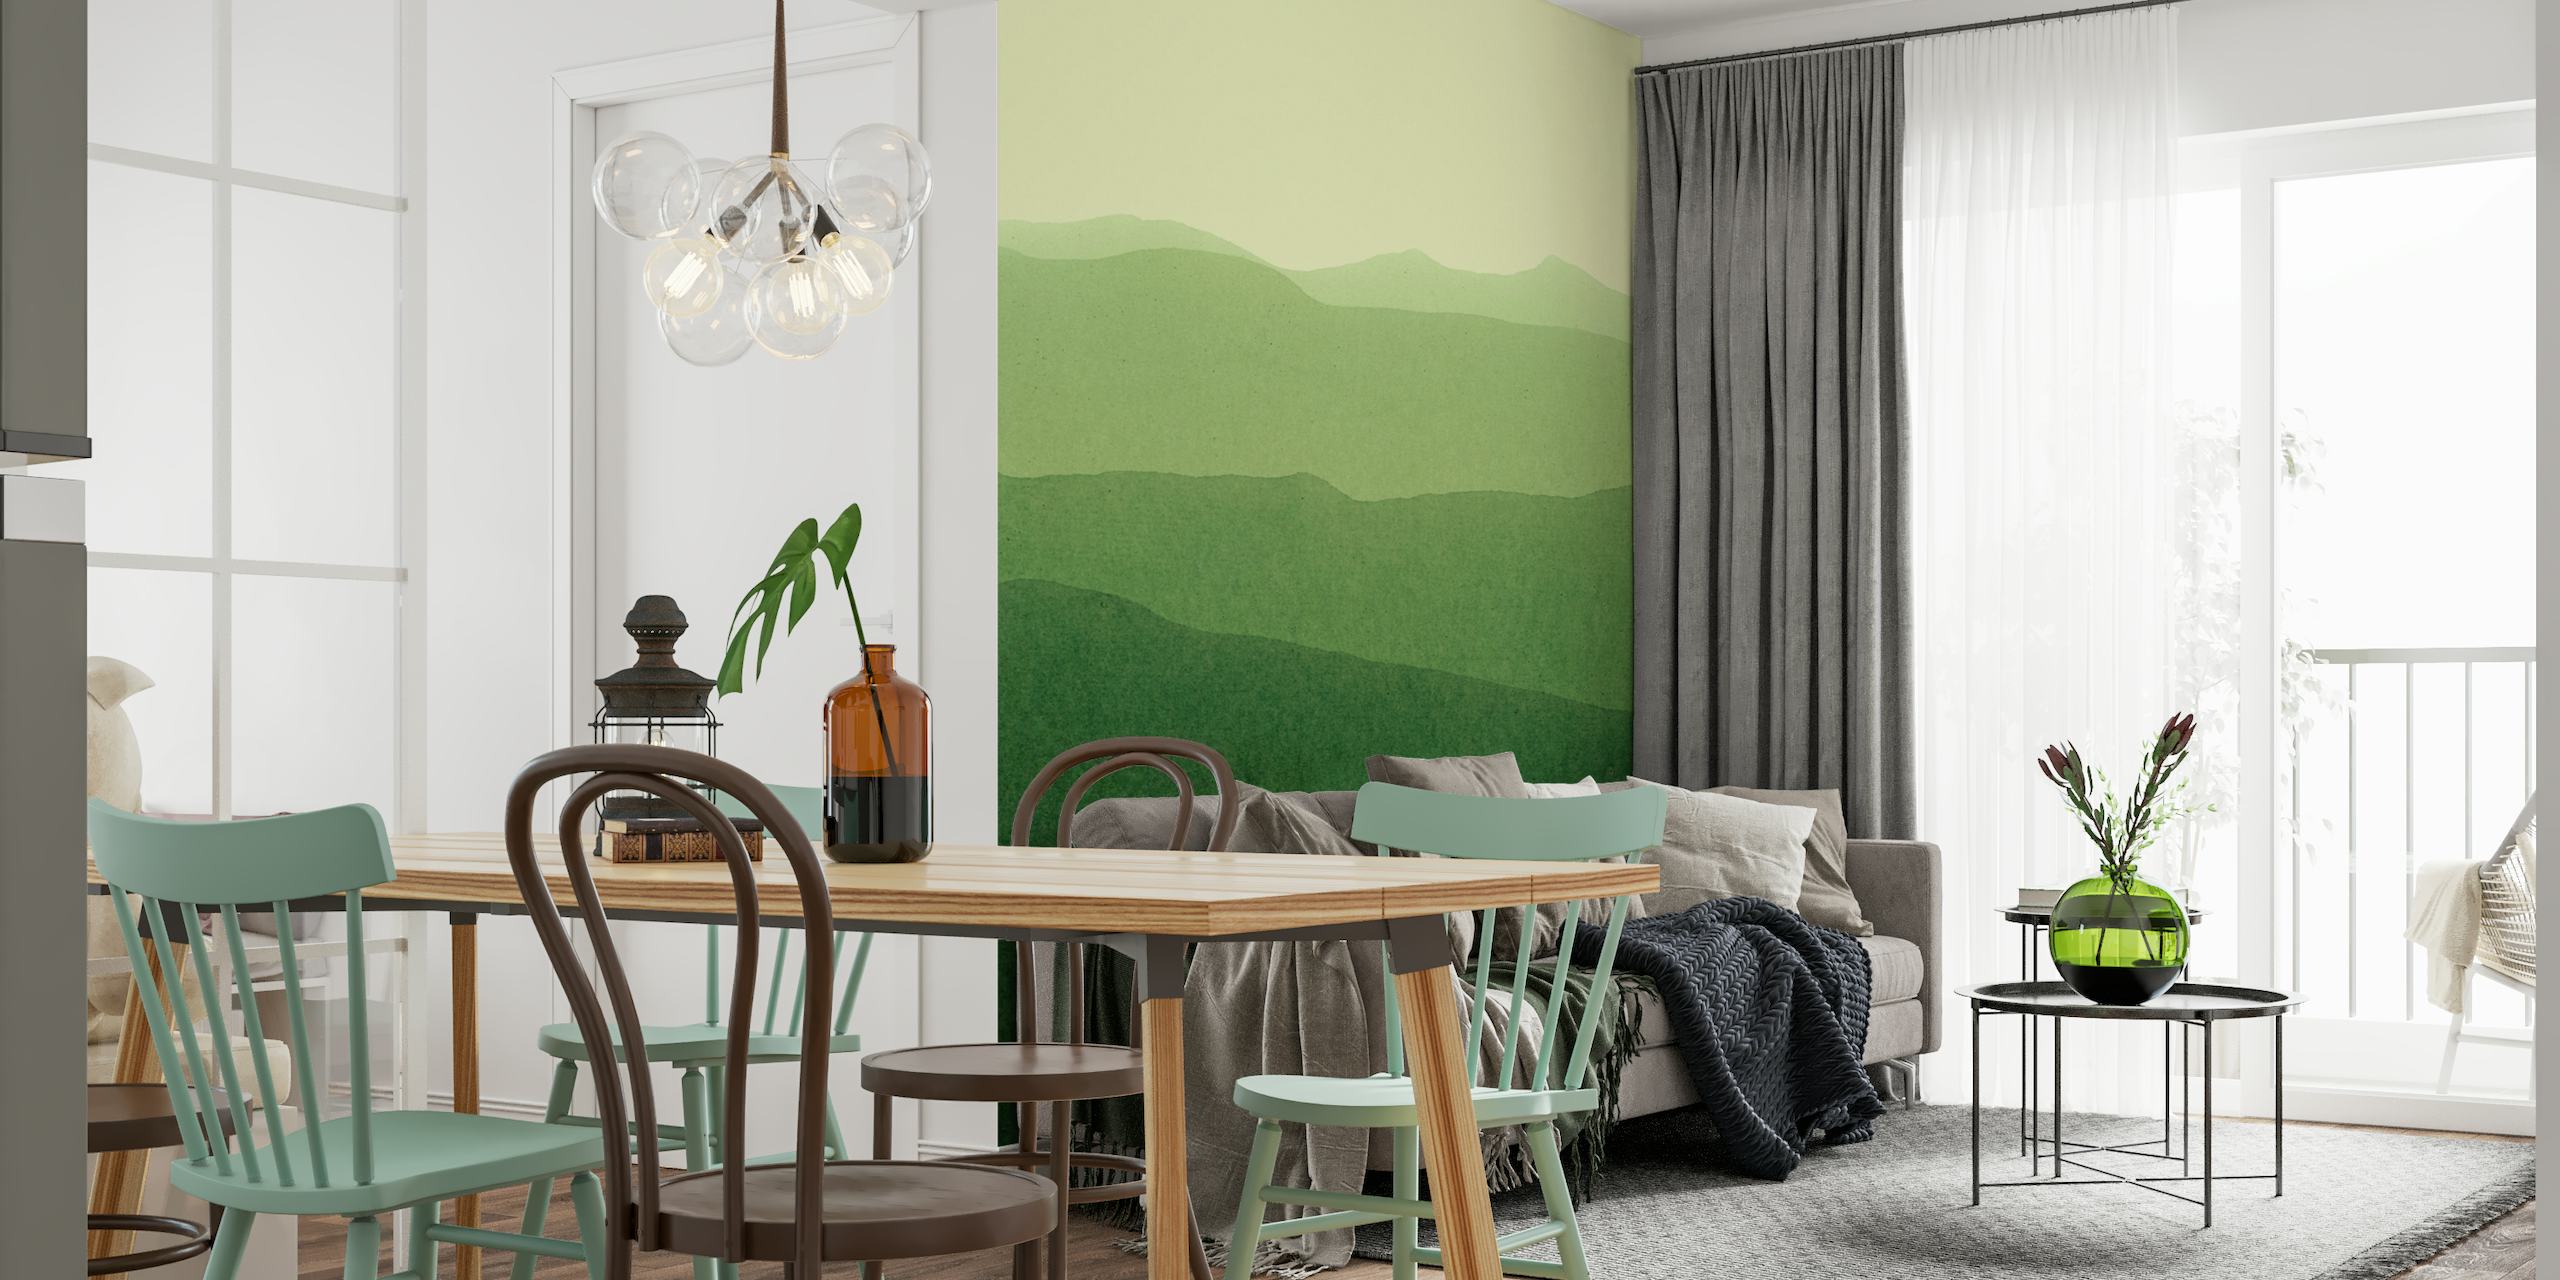 Tyylitelty vihreä kaltevuus maisema seinämaalaus, joka kuvaa mäkiä